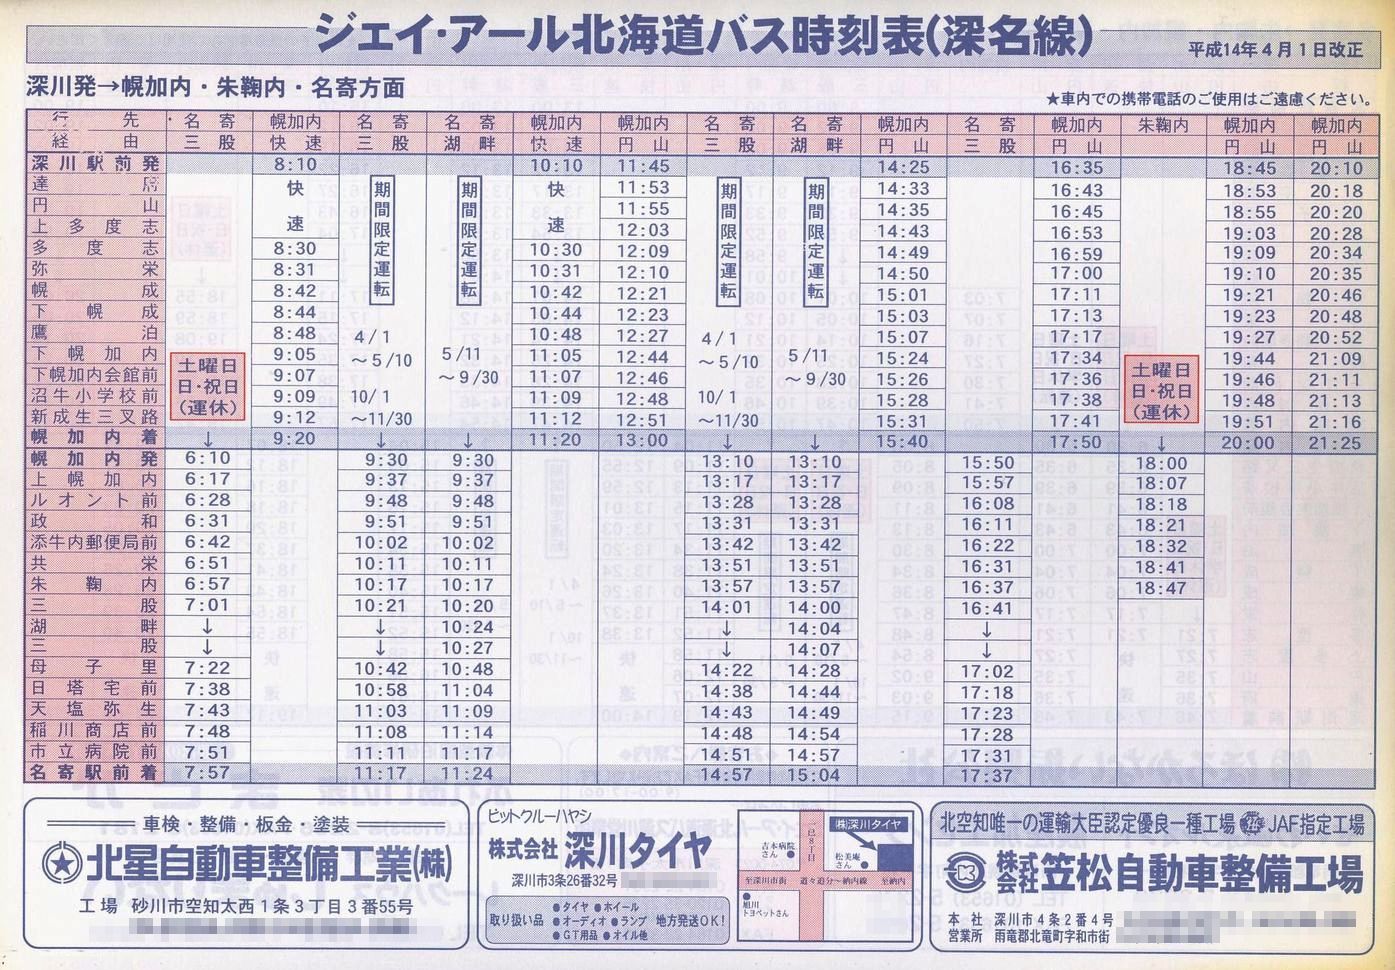 2002-04-01改正_ジェイ・アール北海道バス_深名線時刻表表面